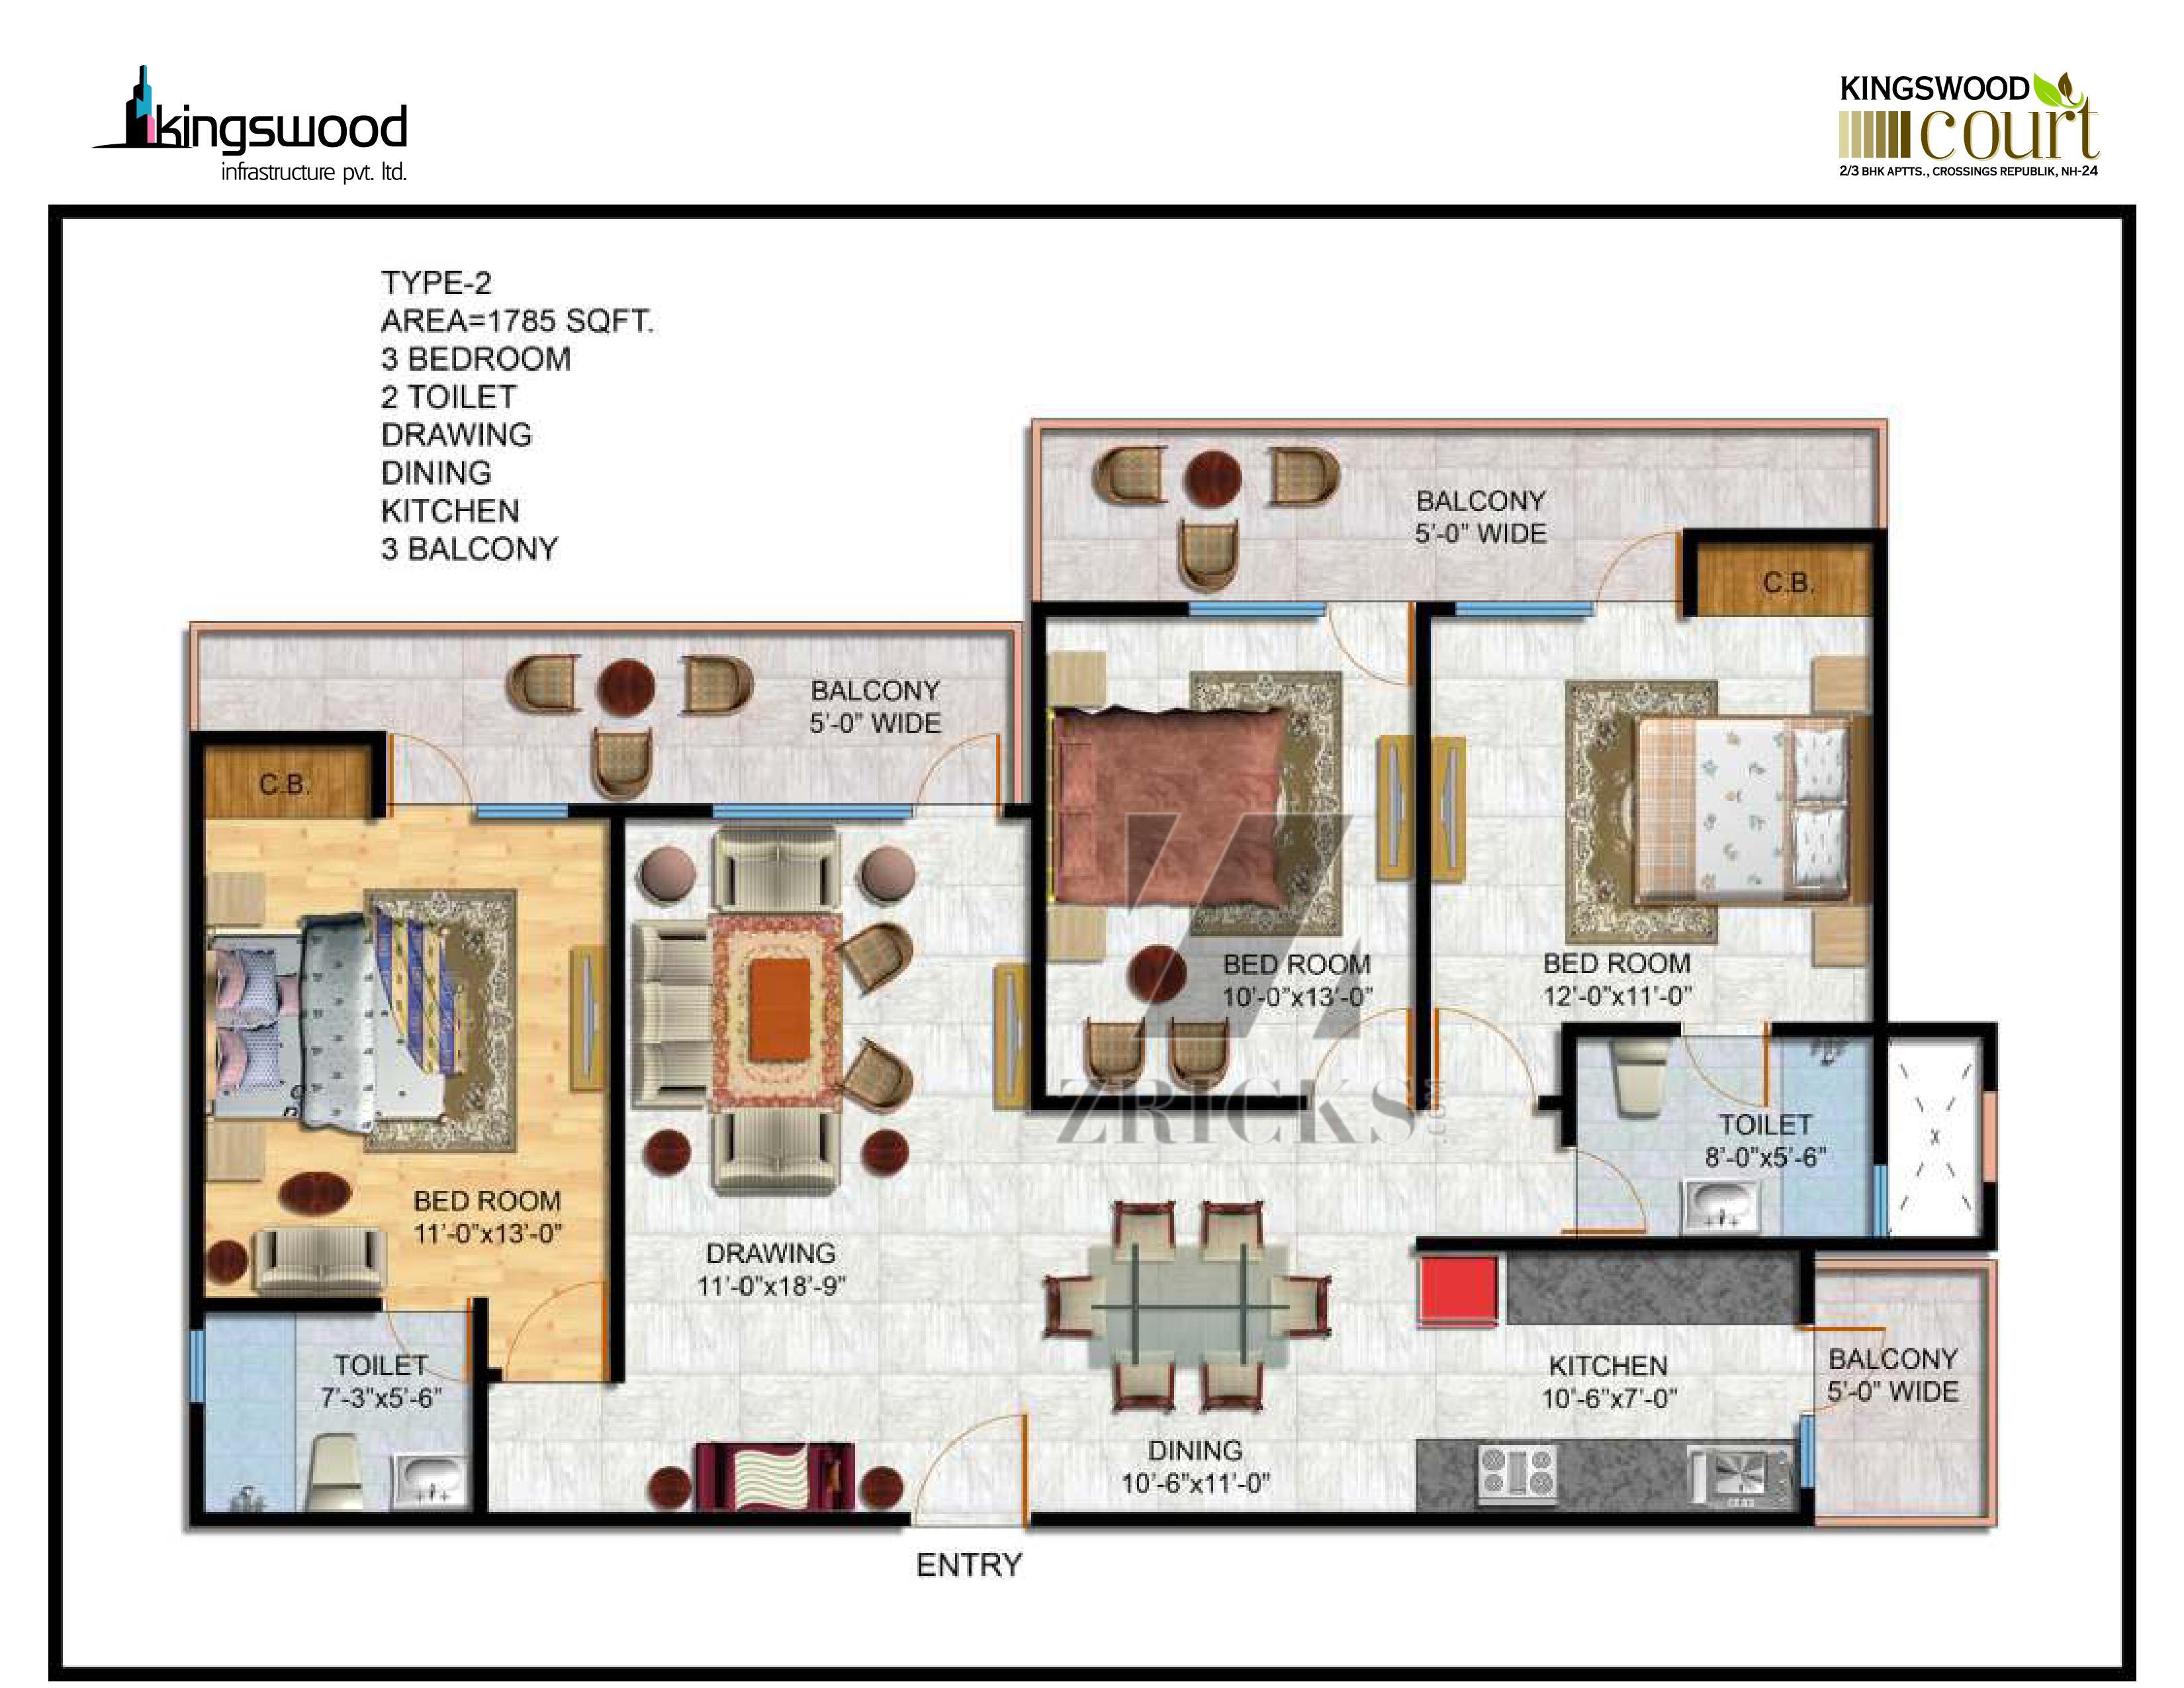 Kingswood Court Floor Plan